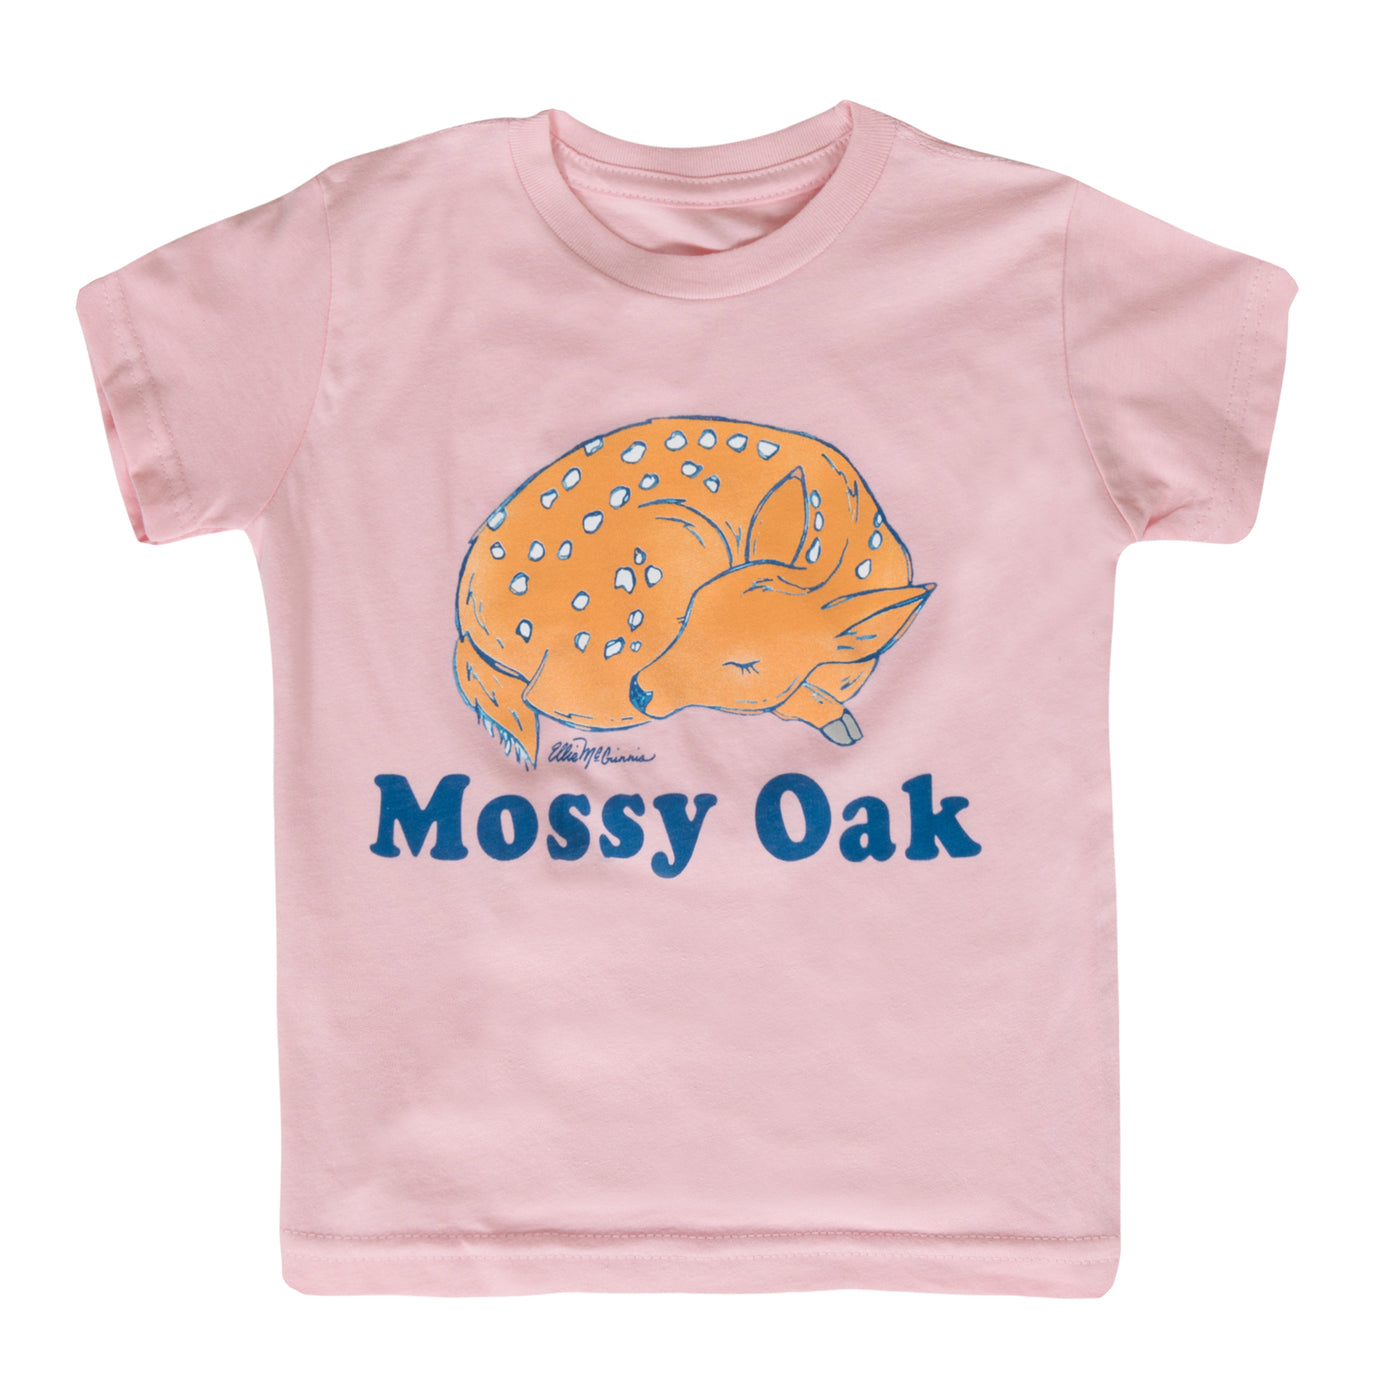 Mossy Oak Toddler Fawn Short Sleeve Tee Light Pink